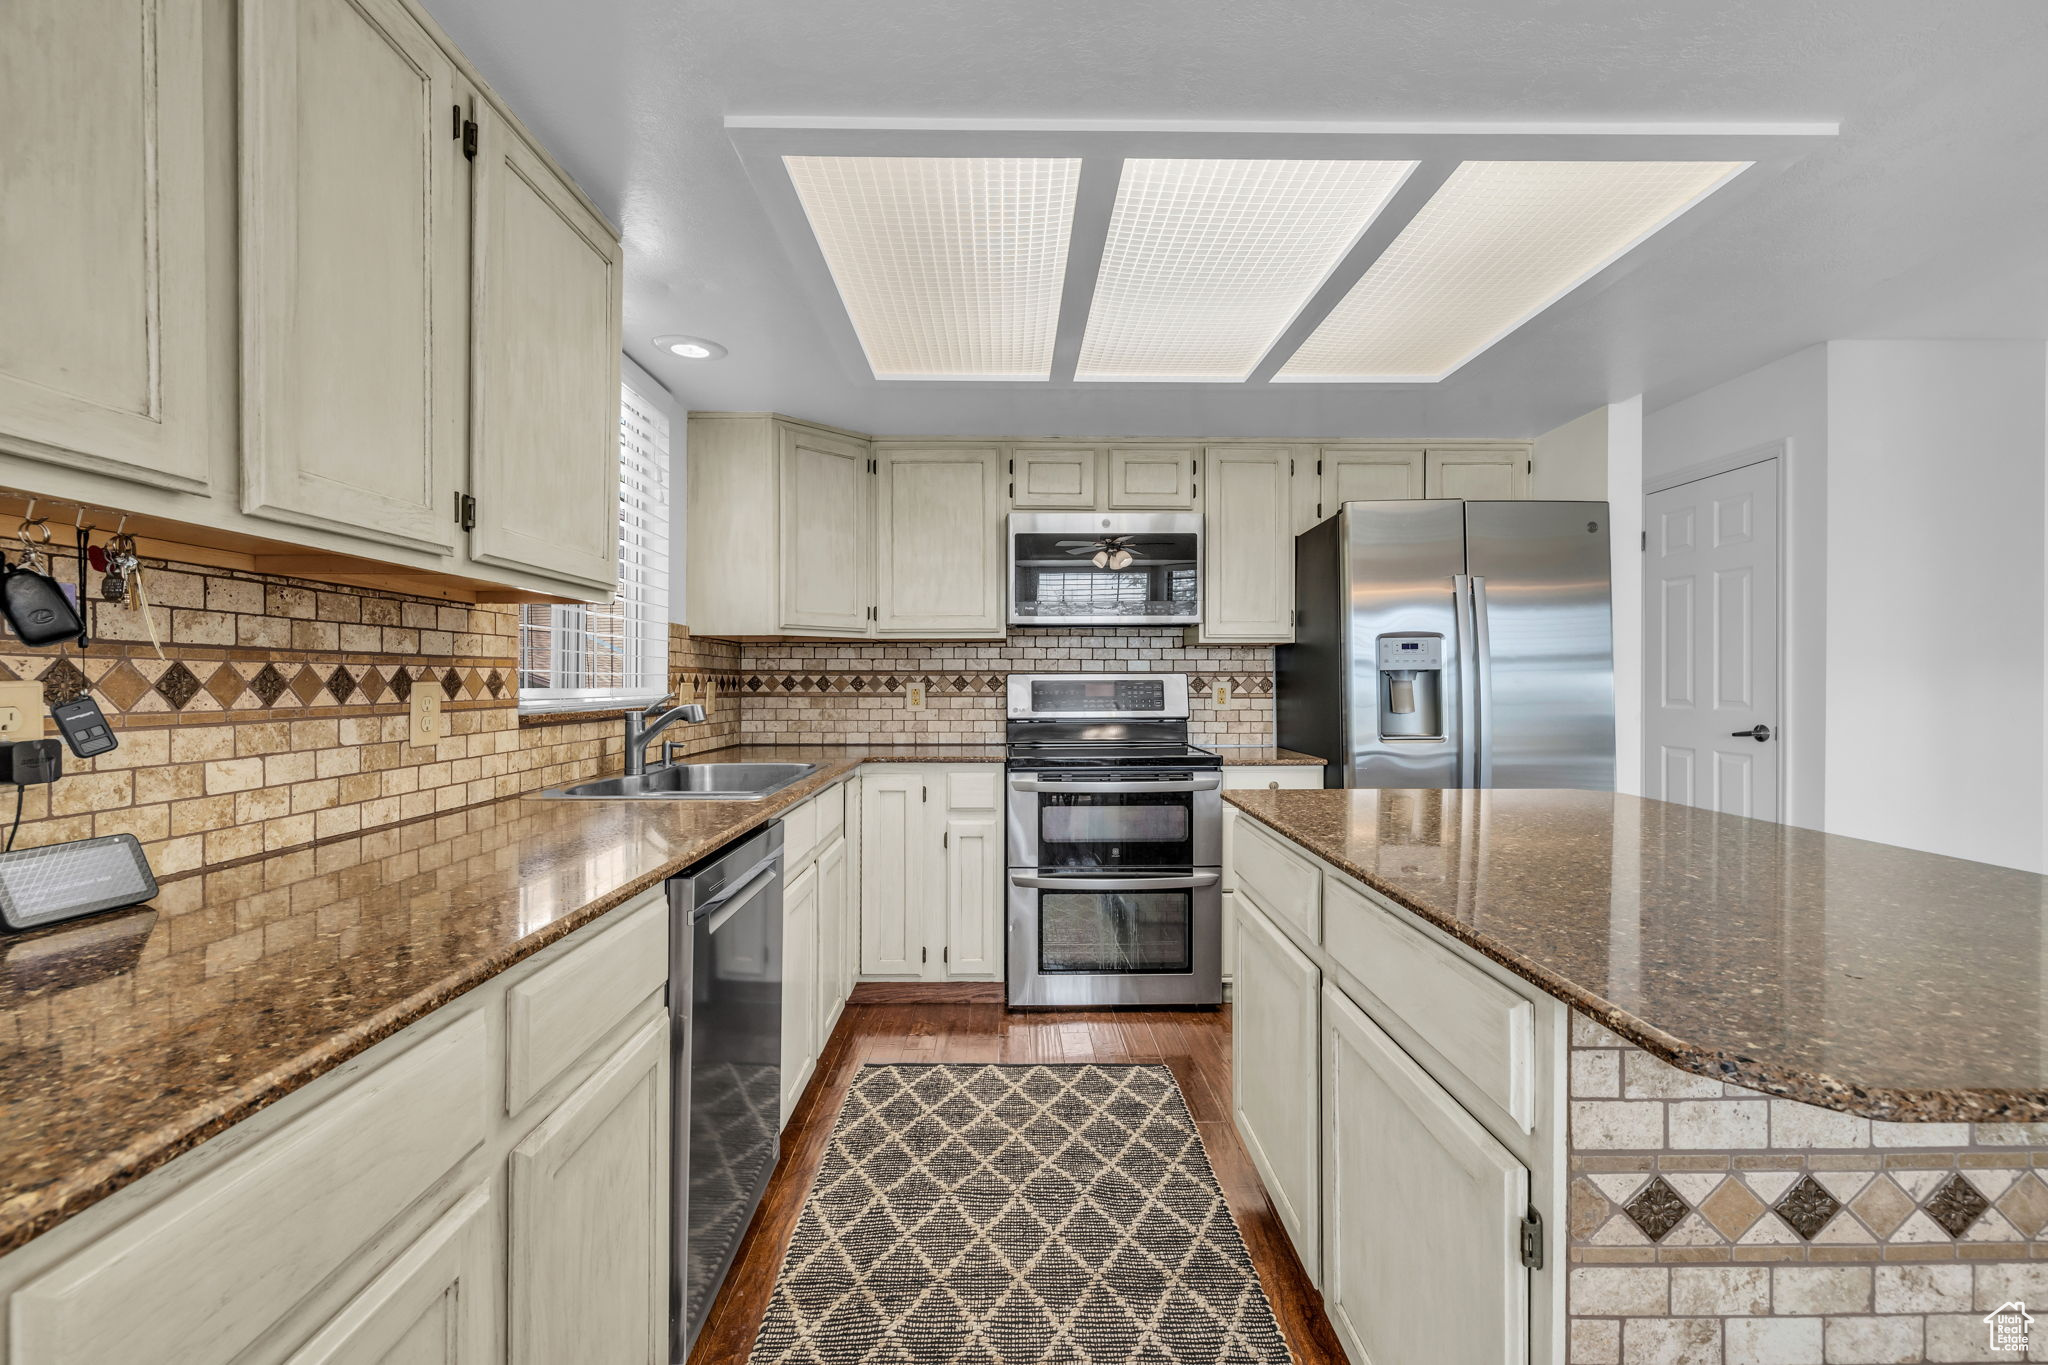 Kitchen featuring stainless steel appliances, tasteful backsplash, dark wood-type flooring, dark stone counters, and sink